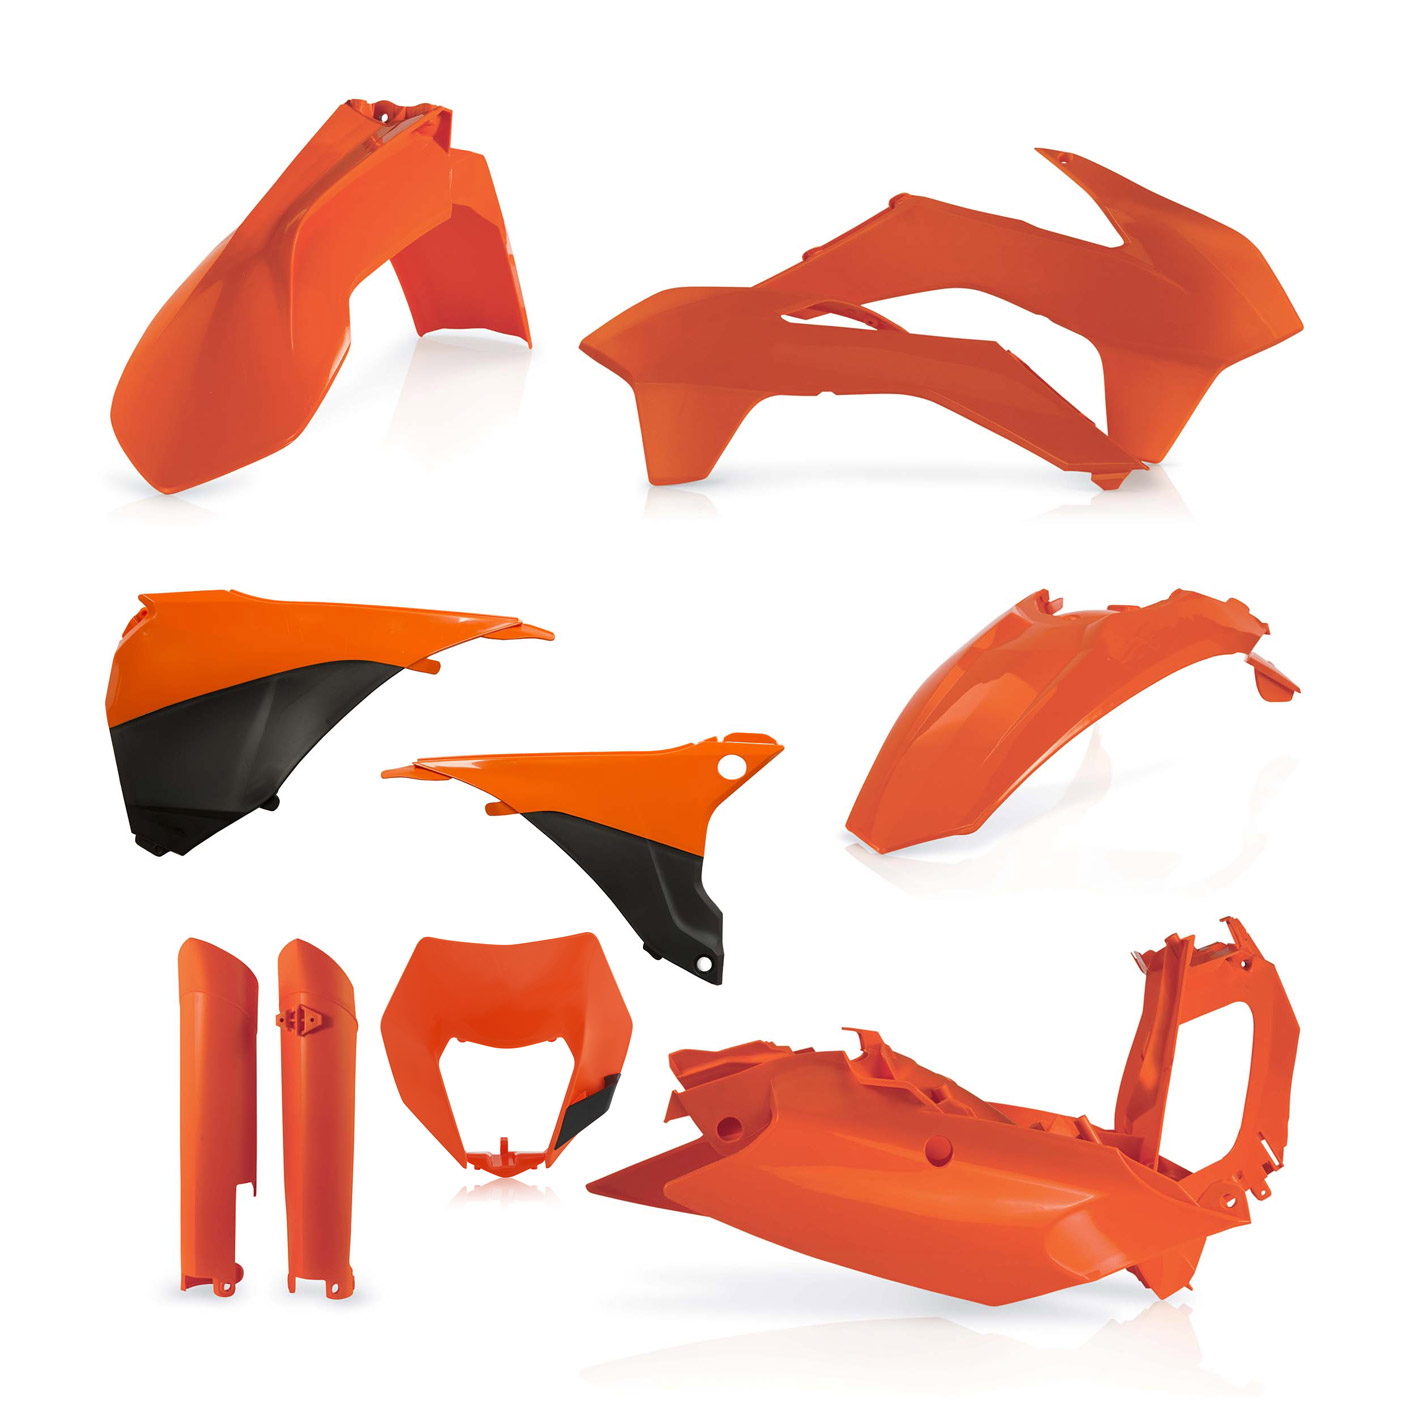 Plastikteile für deine KTM EXC und EXC-F in orange. Bestehend aus Frontkotflügel, Heckkotflügel, Tankspoiler, Nummerntafel, Seitenteilen, Gabelschoner und Lampenmaske